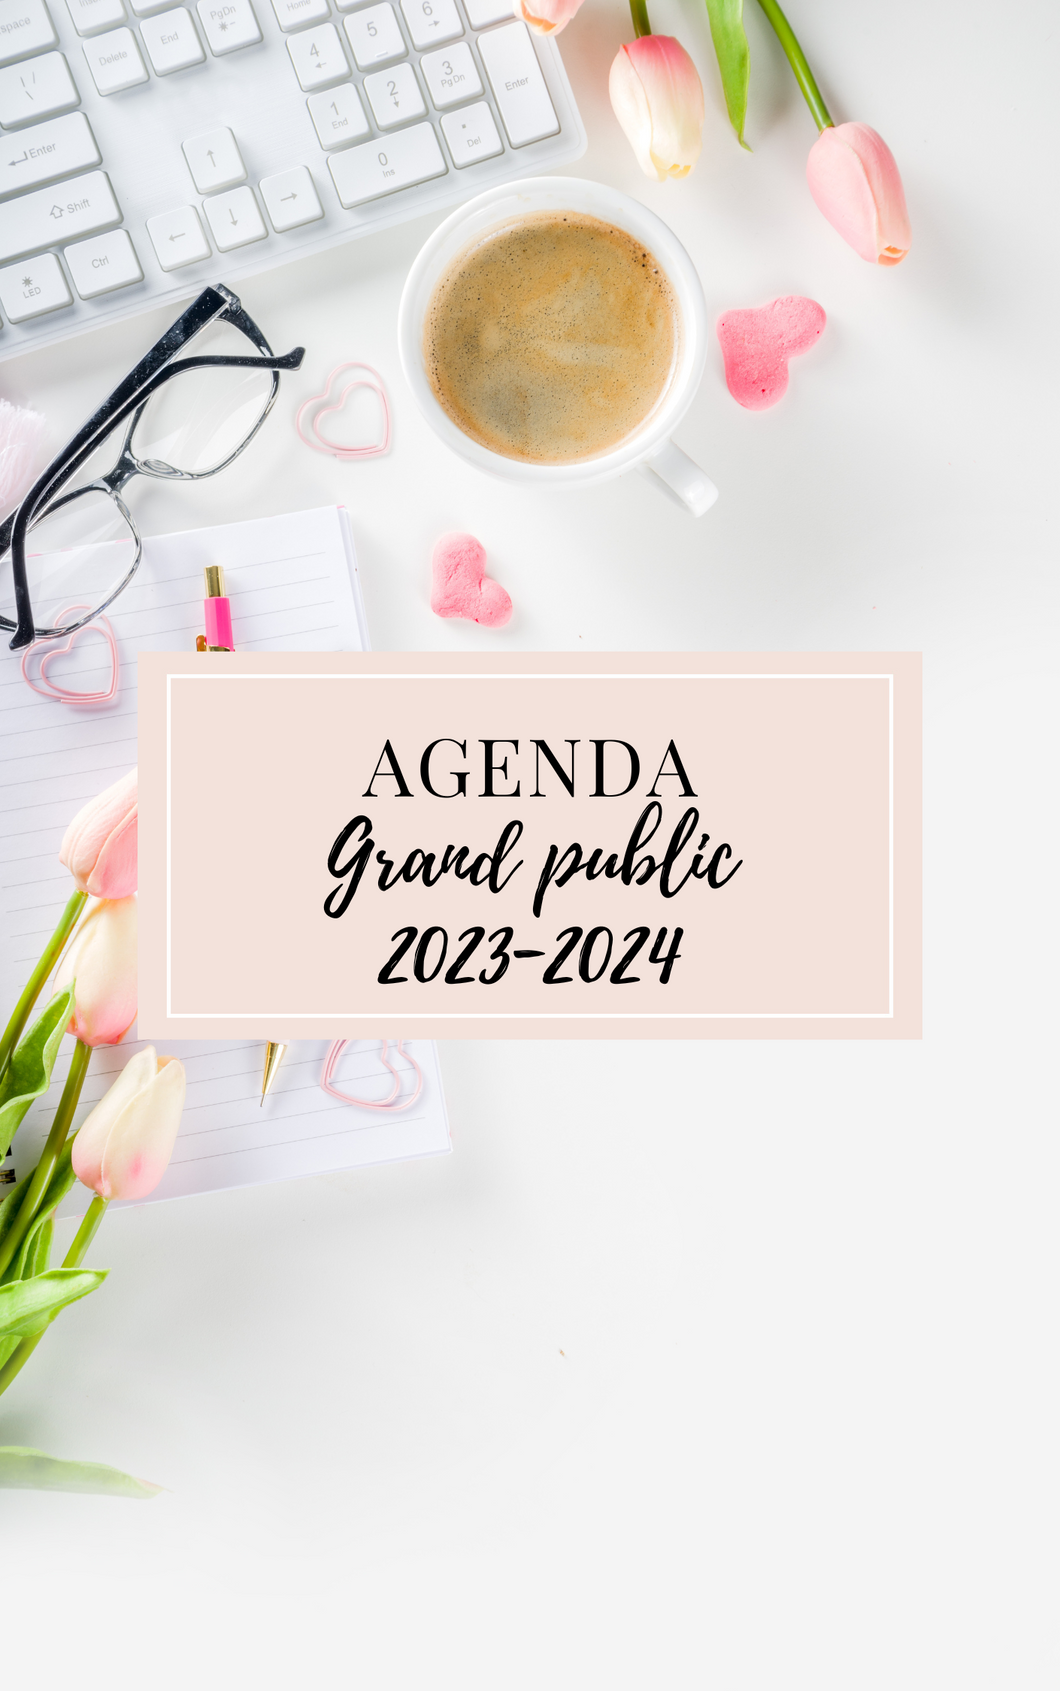 Agenda grand public 2023-2024